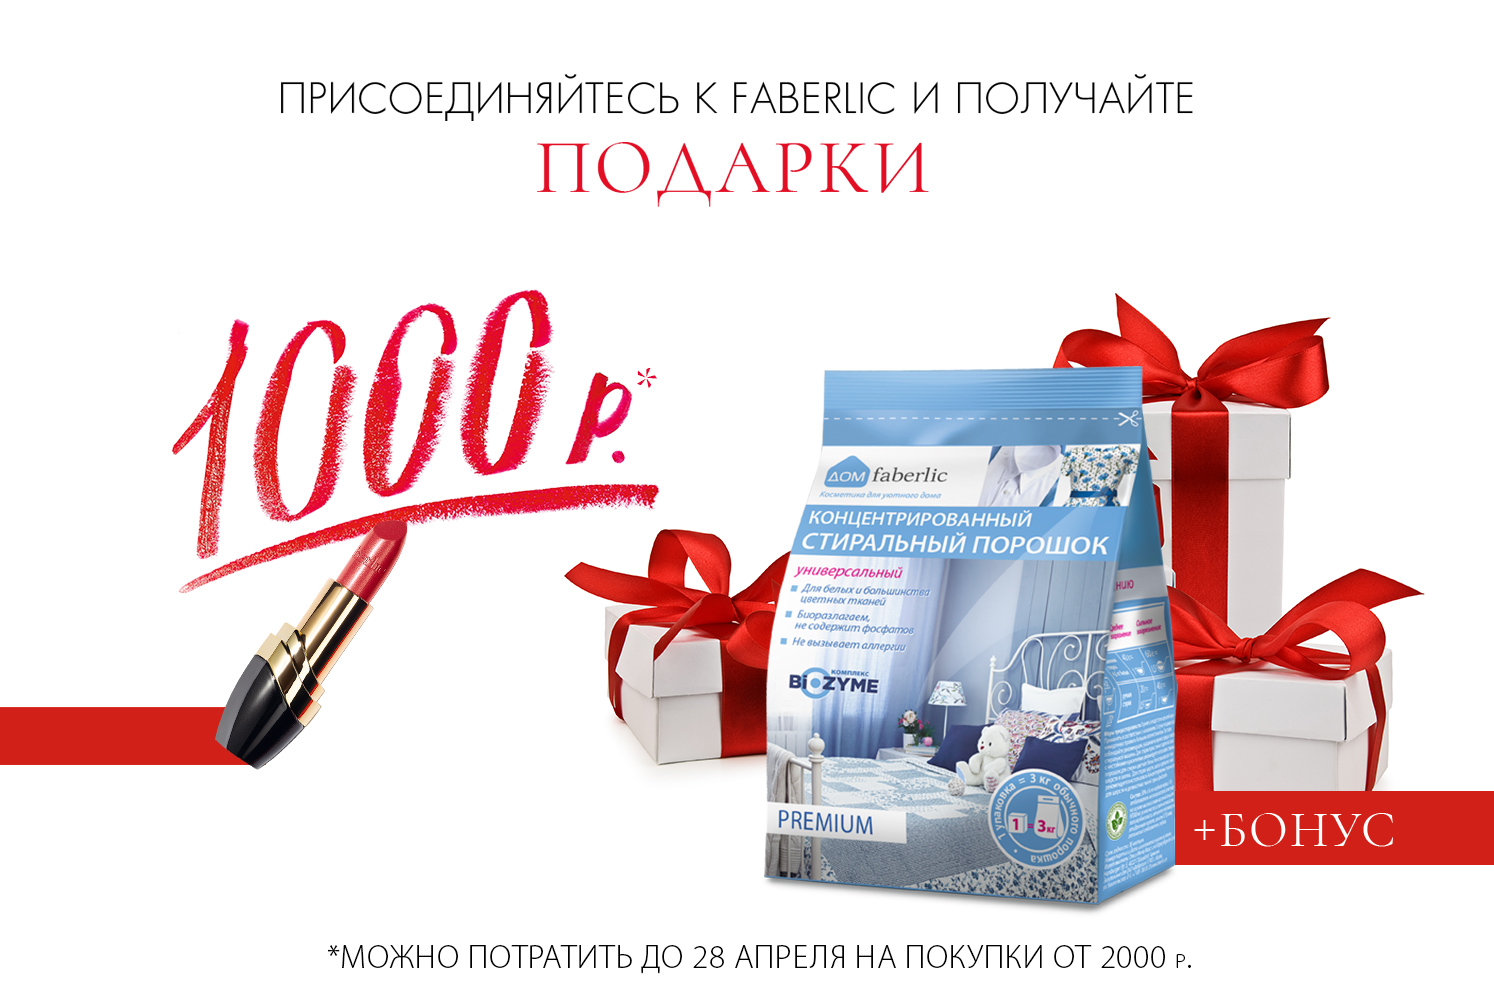 1000 рублей в подарок